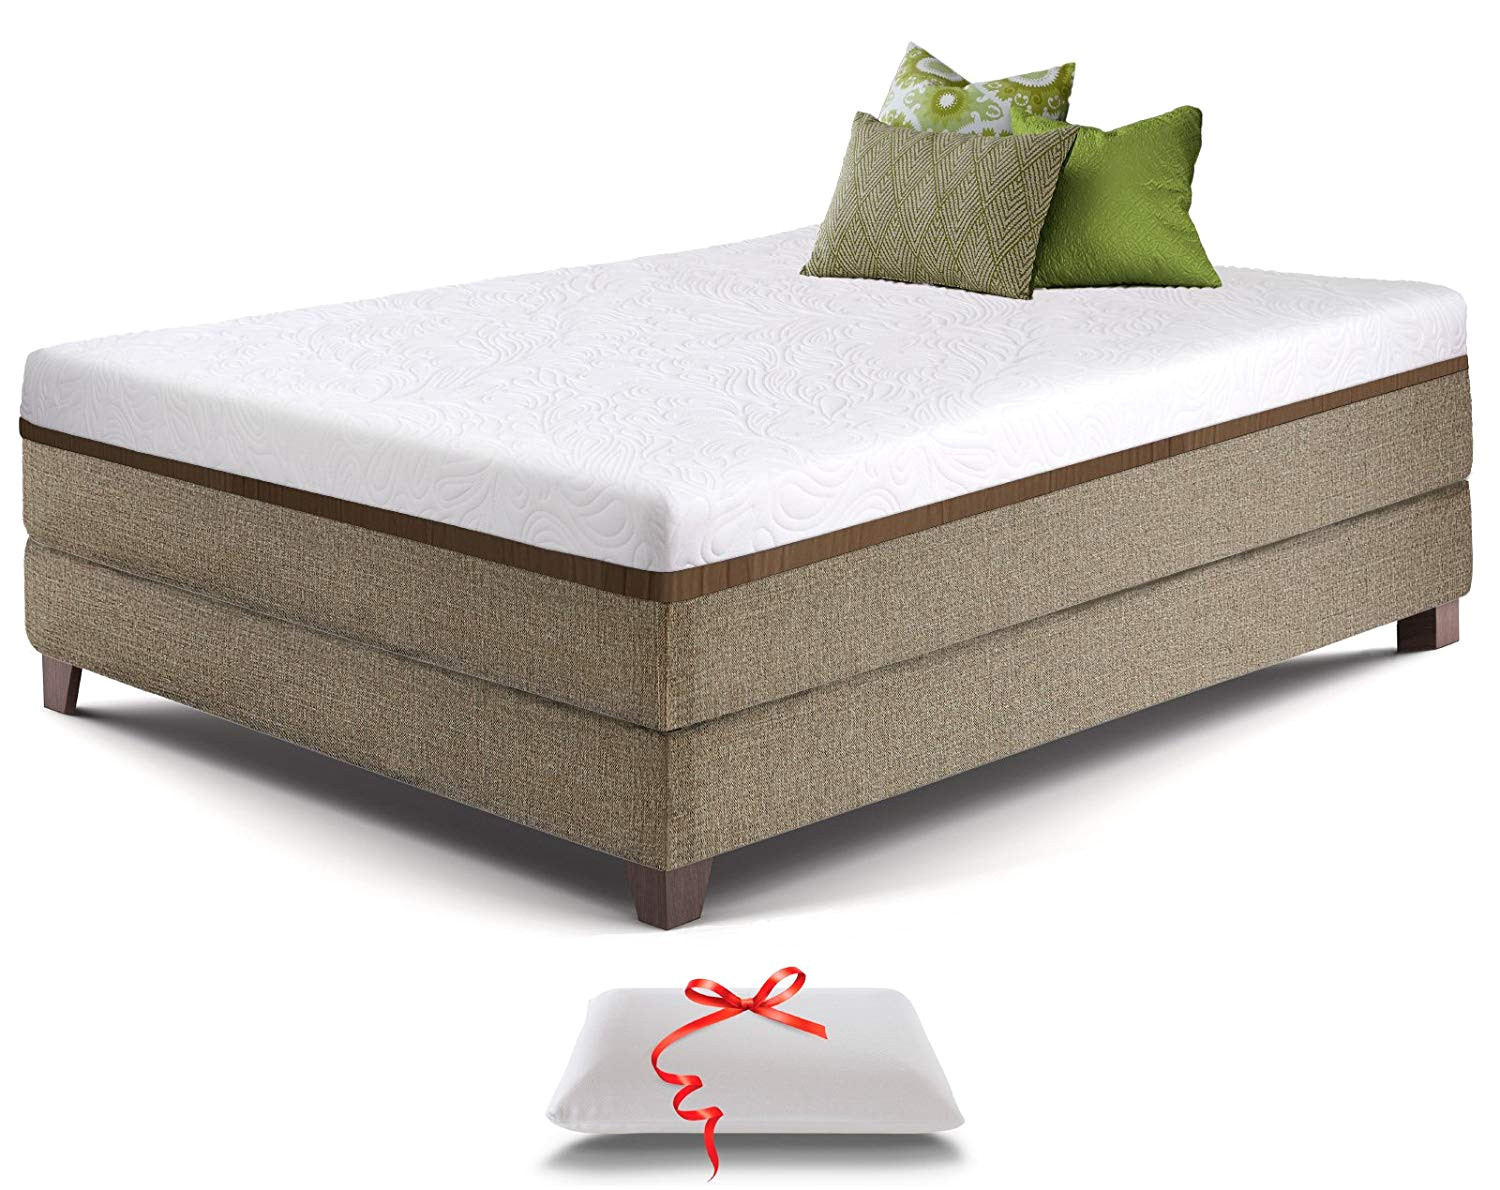 amazon com live sleep ultra queen mattress gel memory foam mattress 12 inch cool bed in a box medium firm advanced support bonus luxury pillow